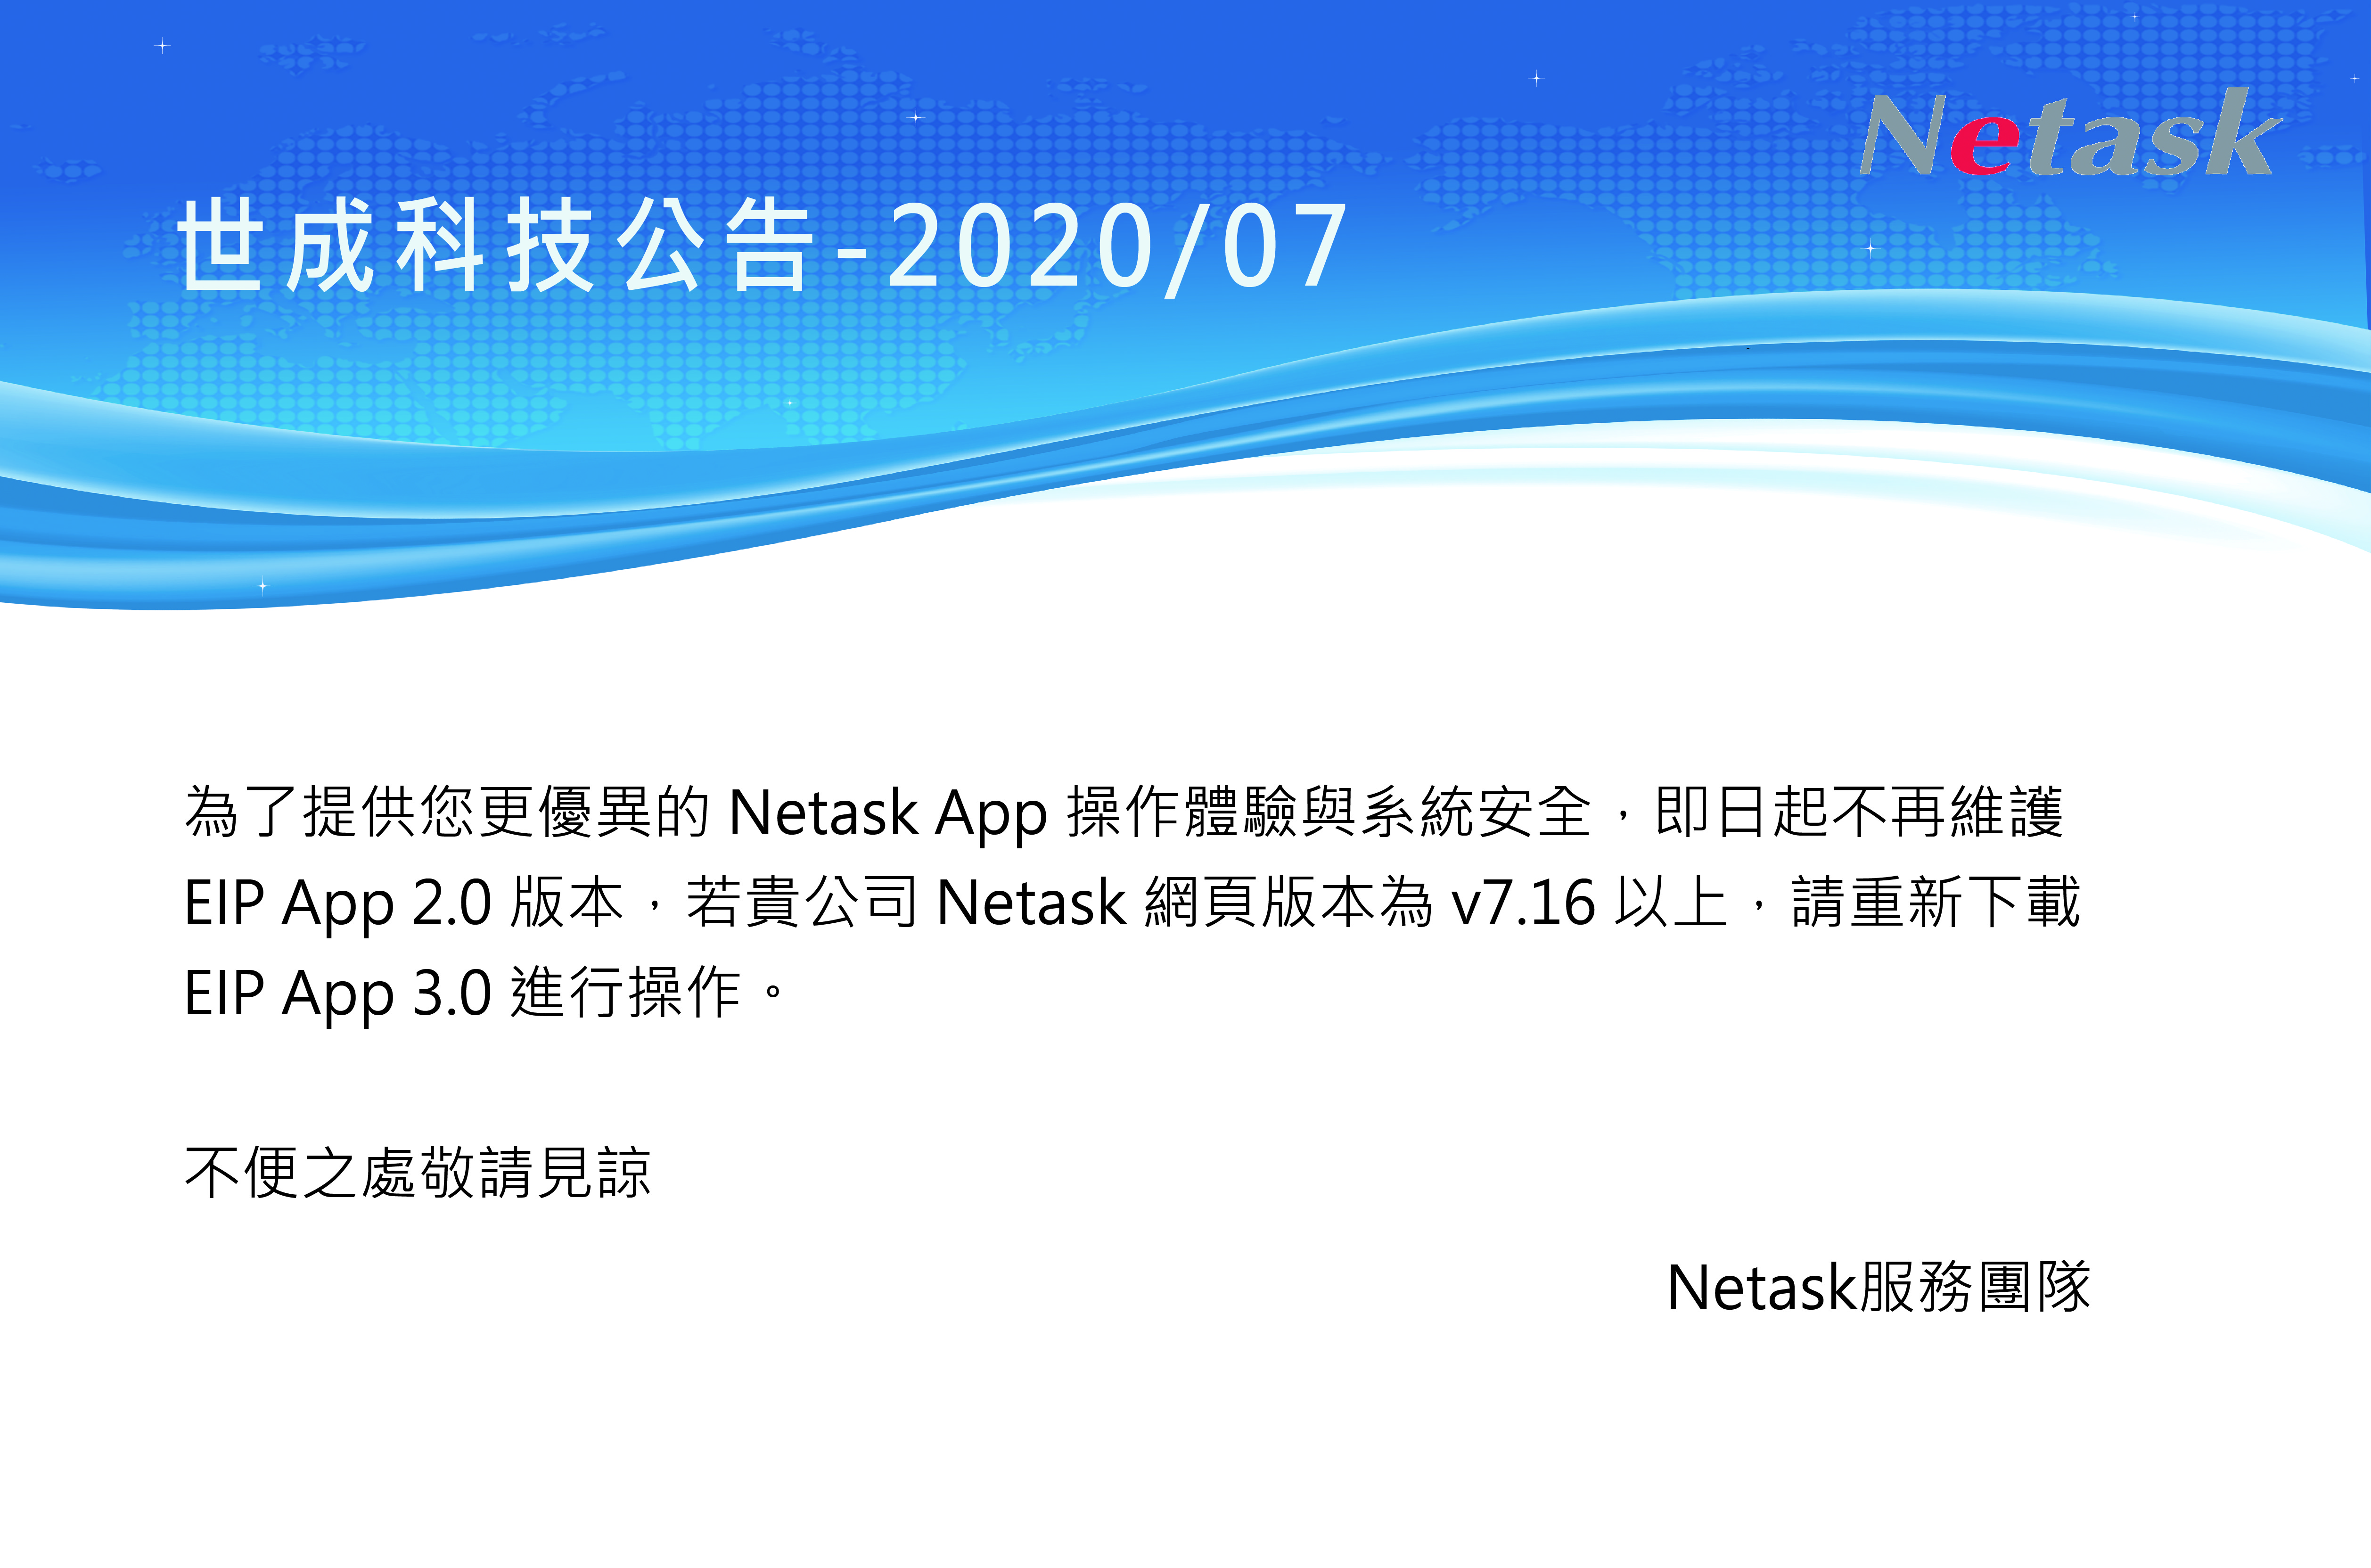 不再維護App2.0,請改用Netask App 3.0